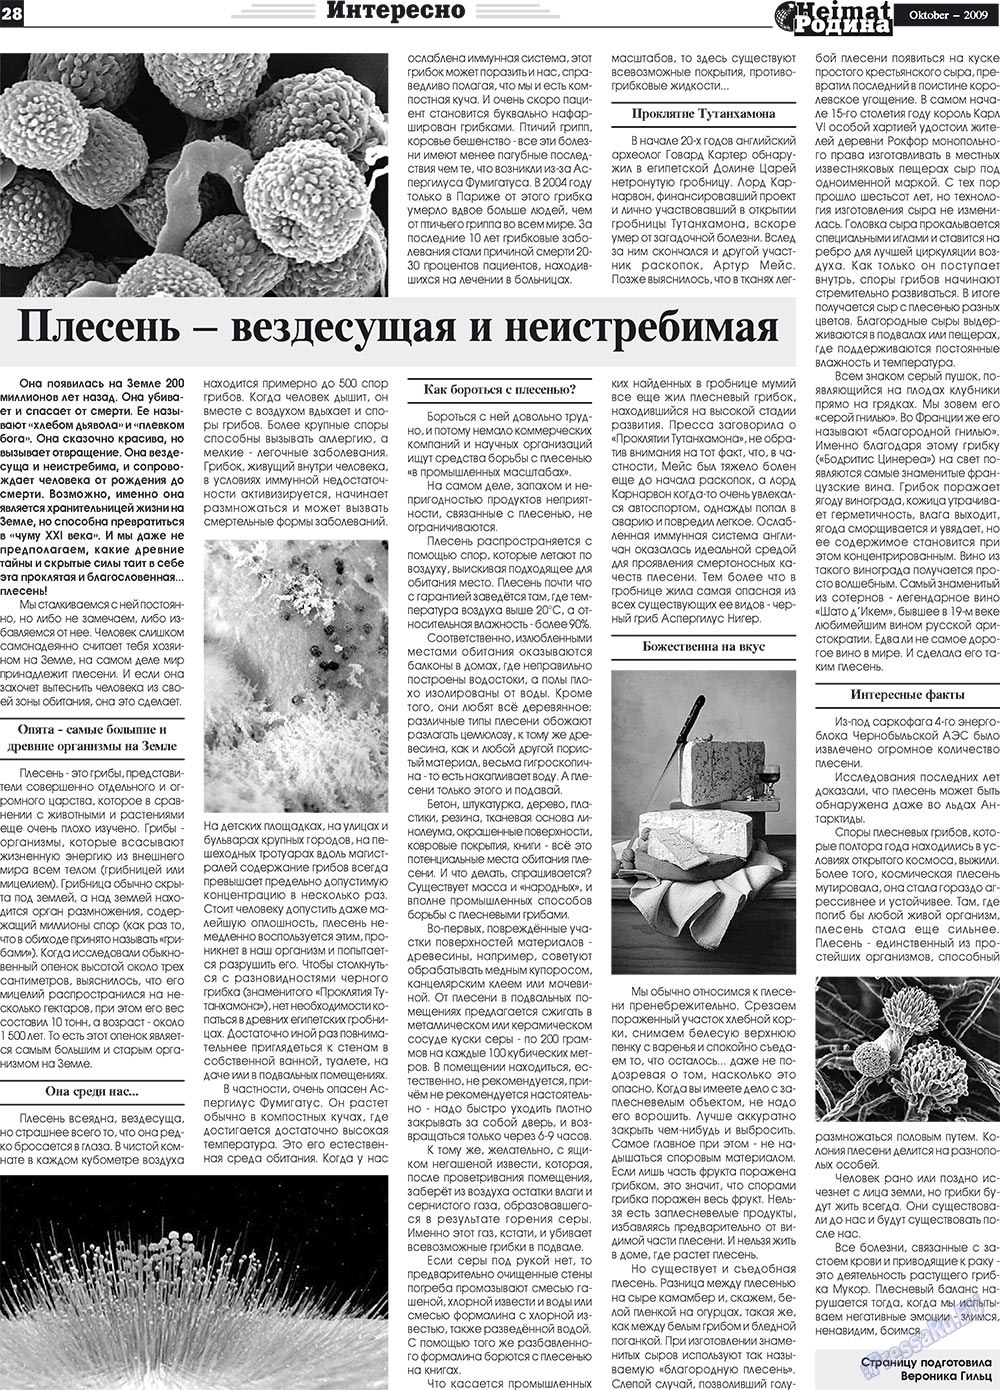 Heimat-Родина (газета). 2009 год, номер 10, стр. 28